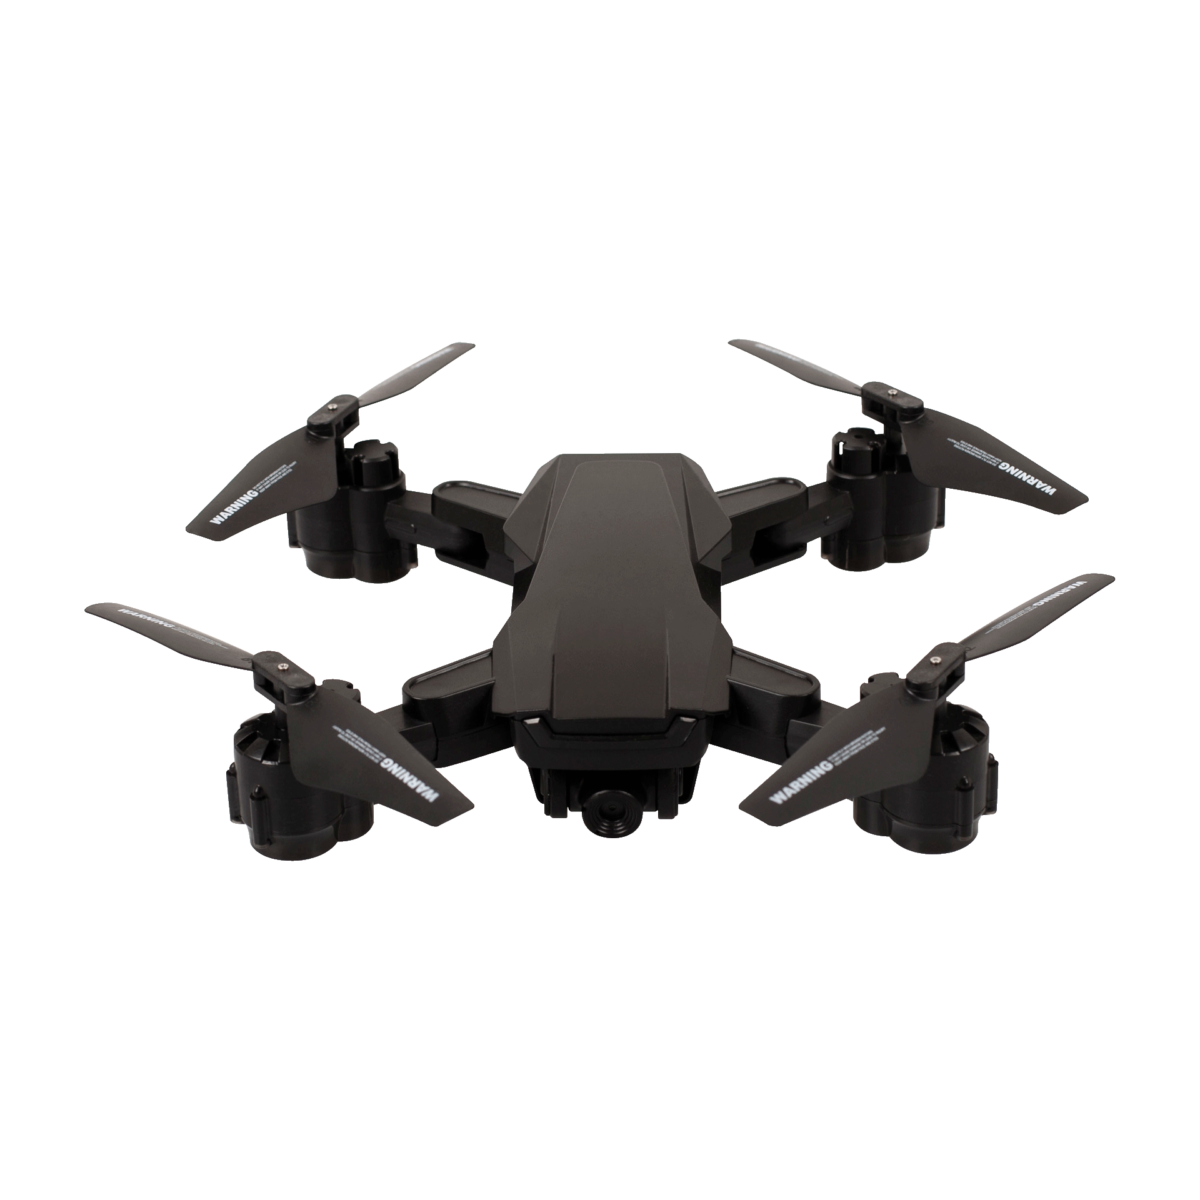 Cómo conseguir y características del dron de Aldi por menos de 50 euros 3